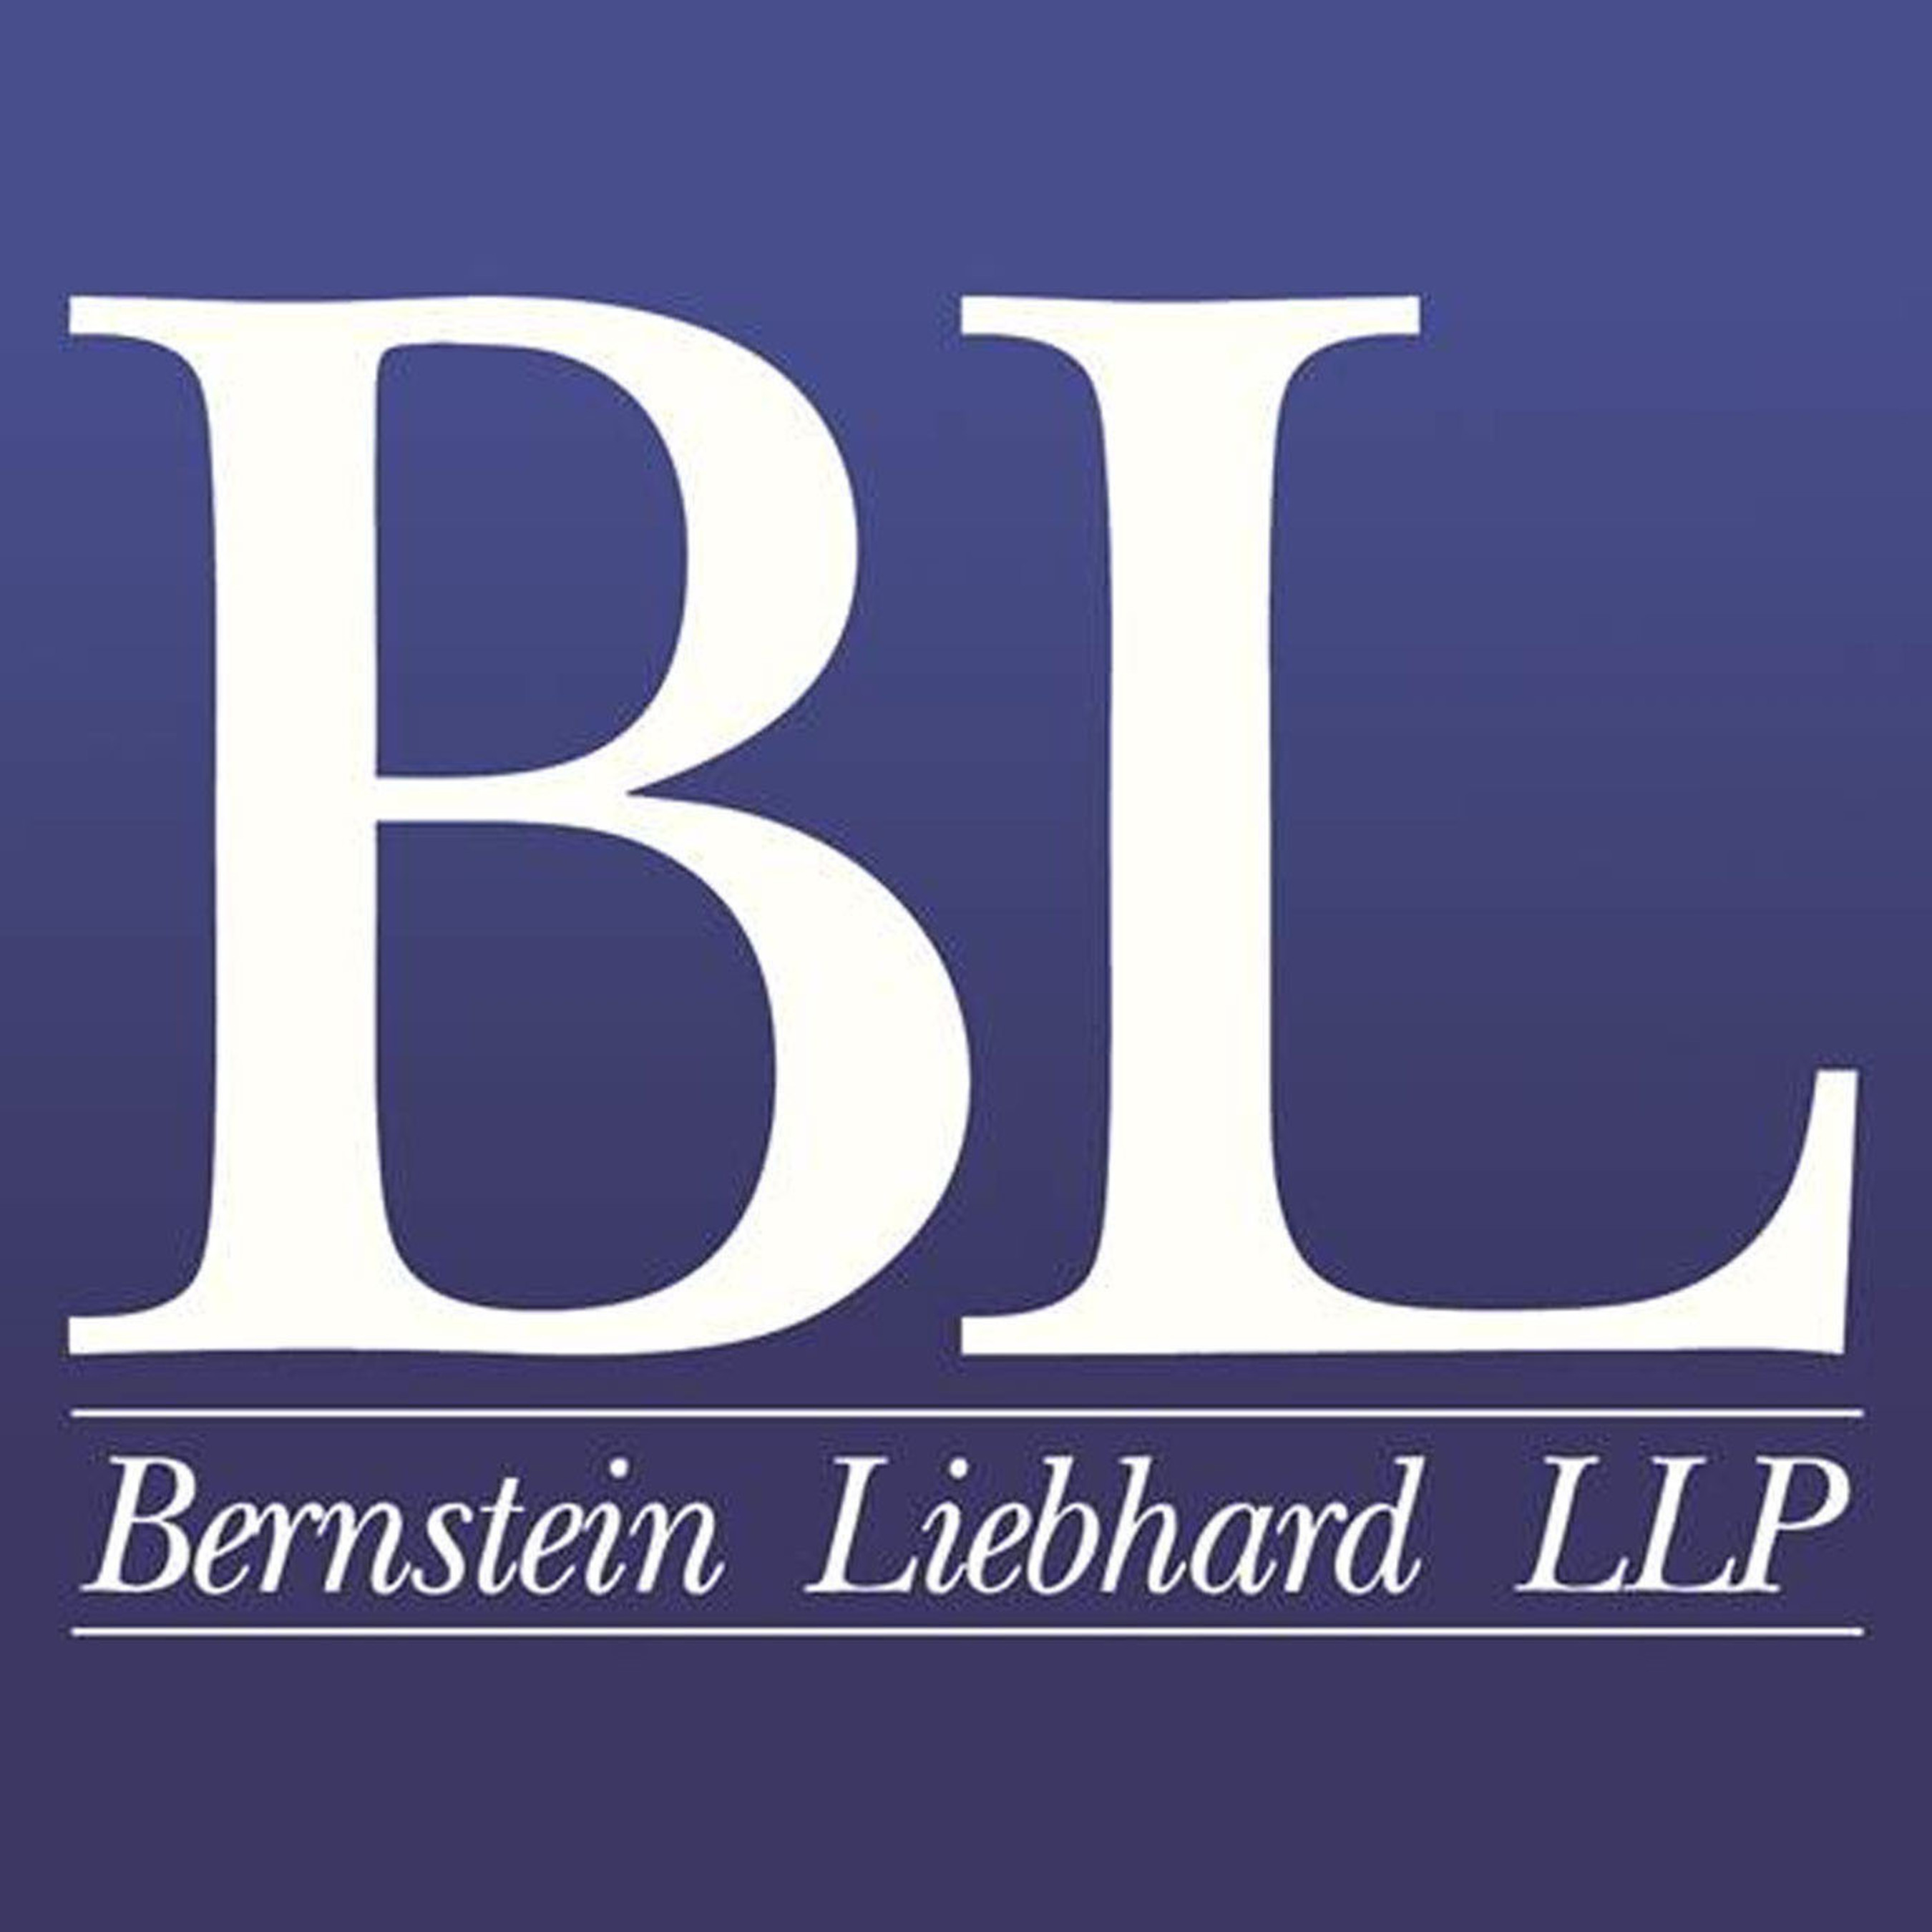 Bernstein Liebhard LLP.